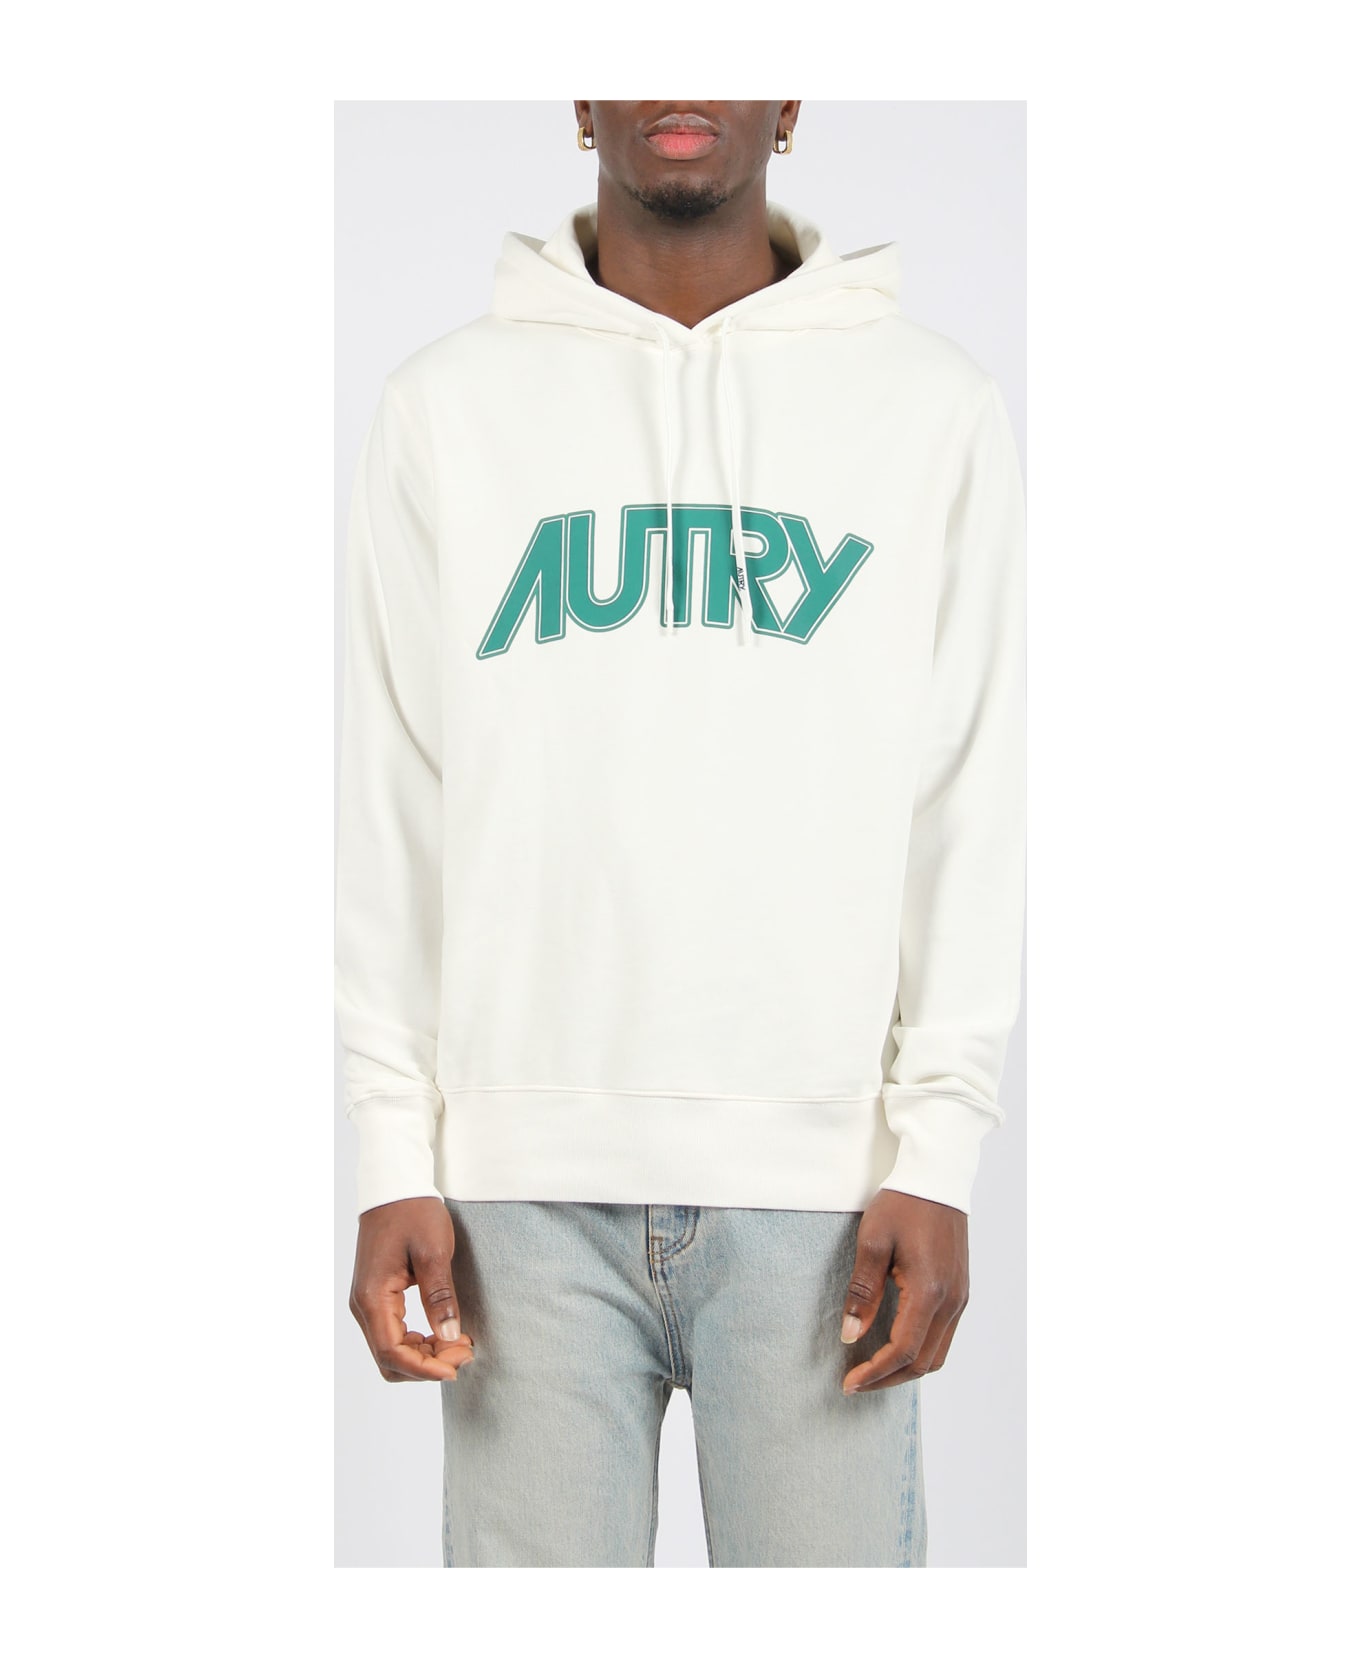 Autry Cotton Hooded Sweatshirt - White フリース